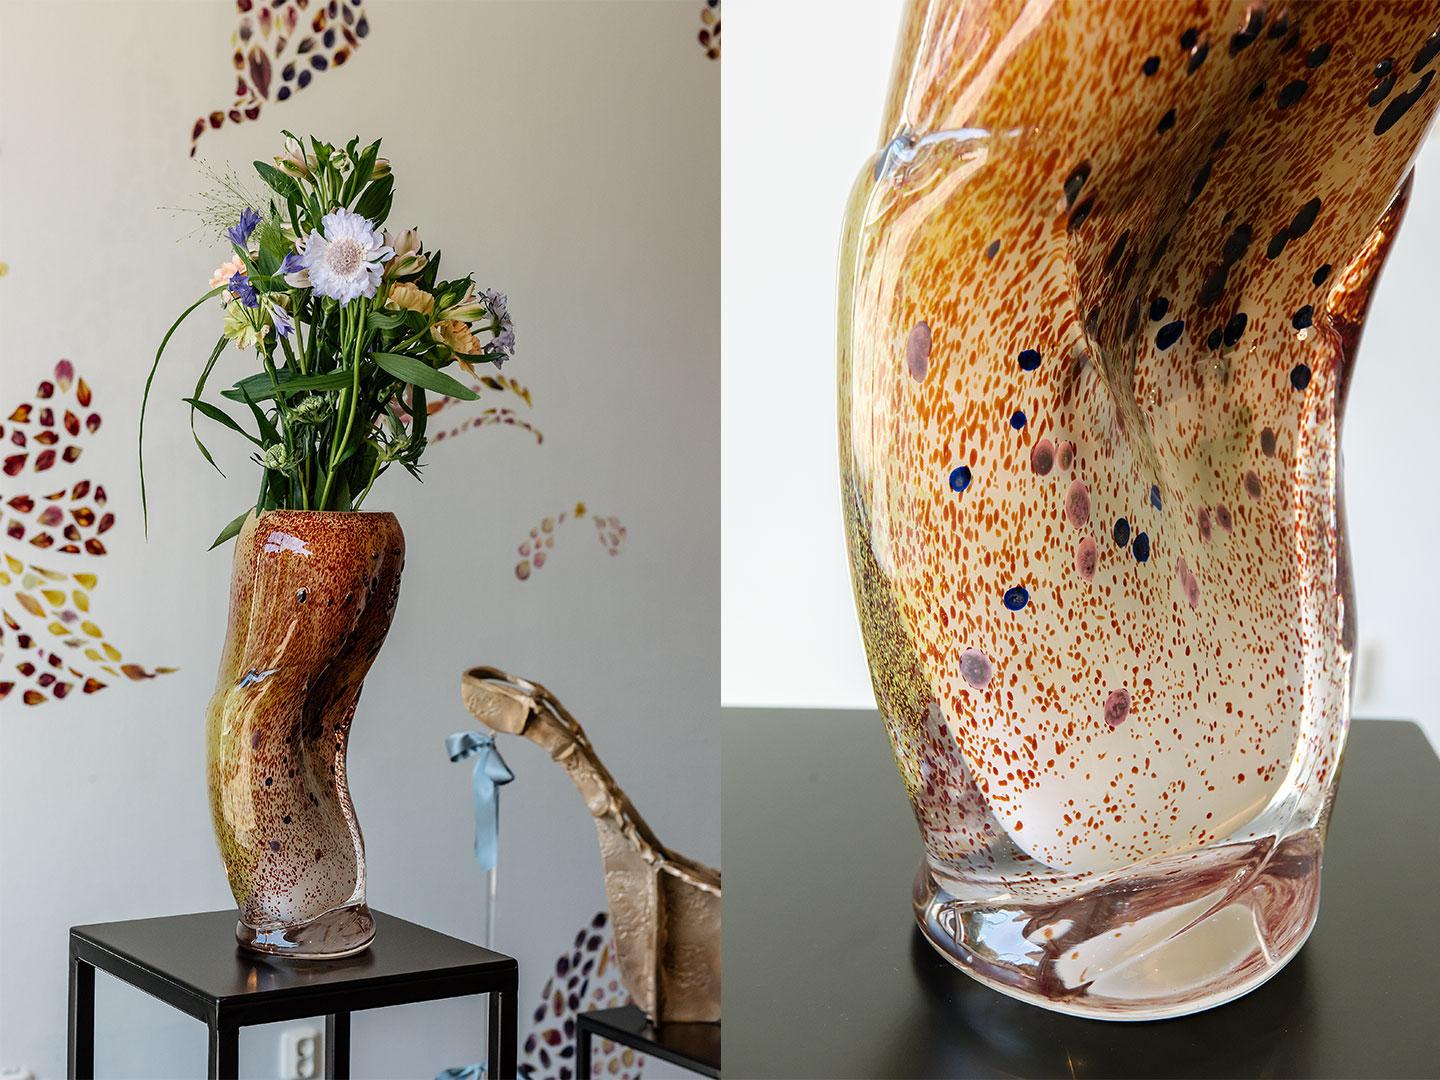 Kaksi vierekkäistä kuvaa taiteilija Man Yaun teoksesta Ornament. Vasemmanpuoleisessa kuvassa on orgaanisen muotoinen lasimaljakko, jossa on kukkia ja lehtiä. Toinen kuva on lähikuva maljakosta, jossa on meripihkanoransseja värejä ja pistemäisiä kuvioita puhalletussa lasissa.